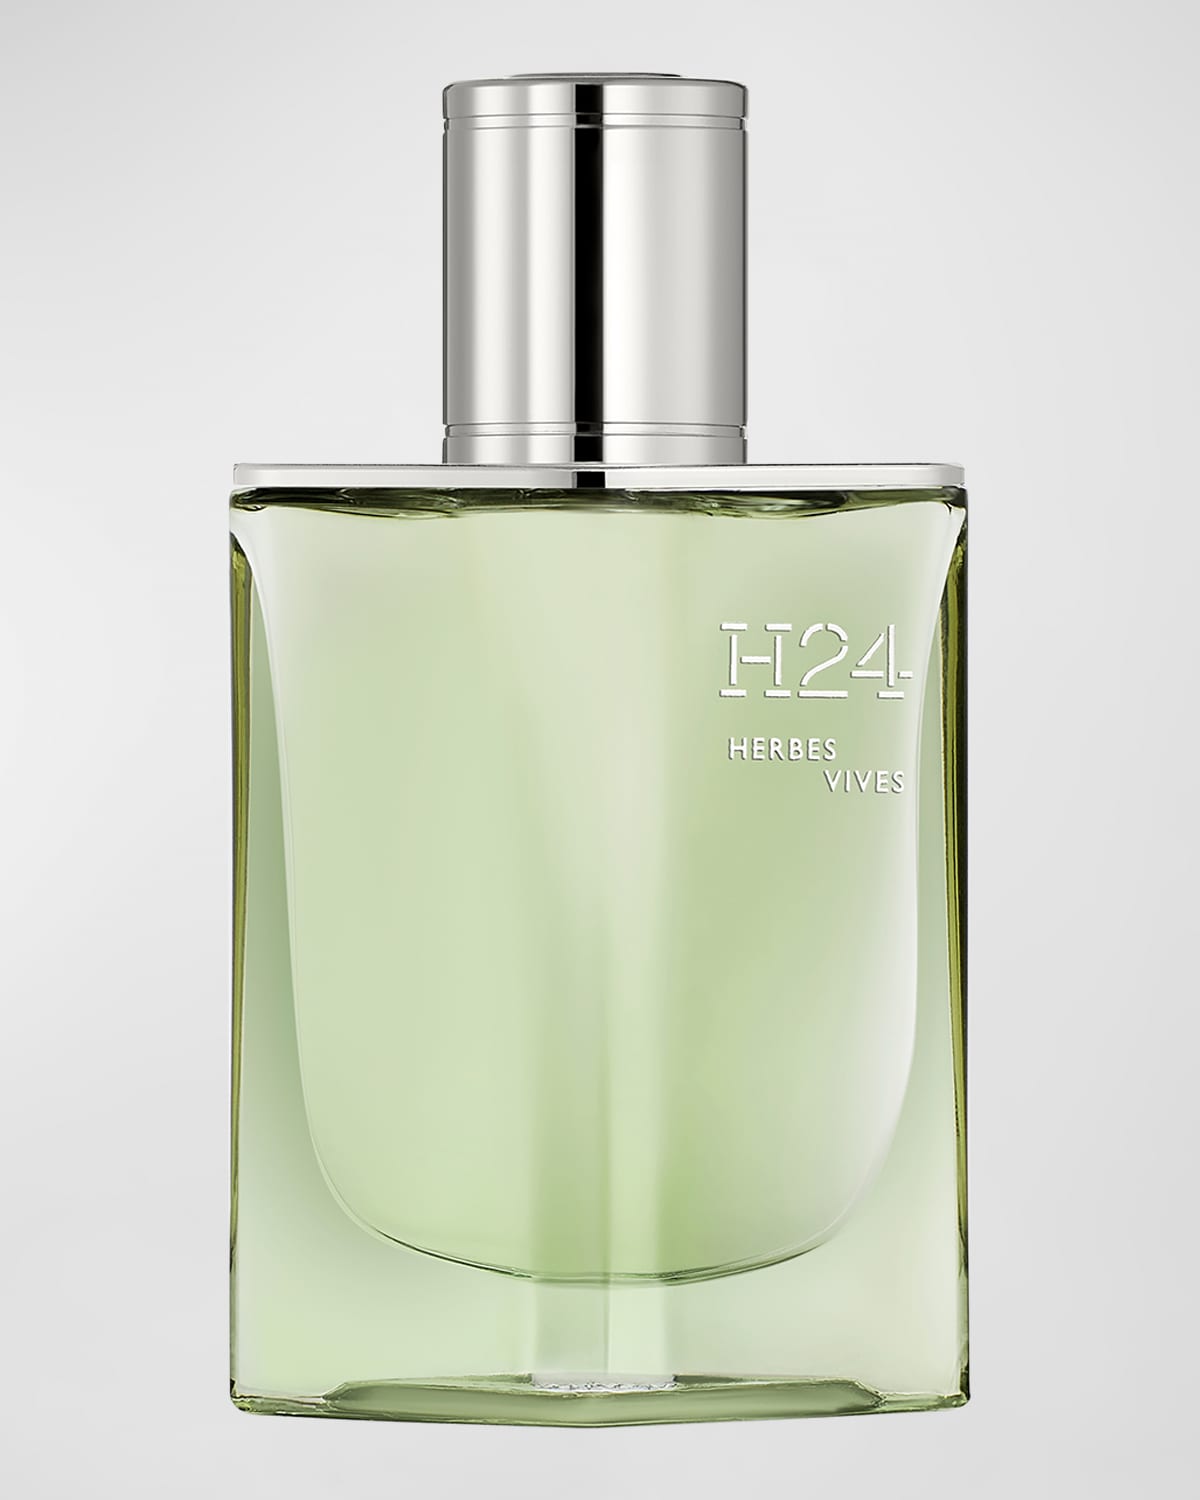 Hermès H24 Herbes Vives Eau de Parfum, 1.6 oz.